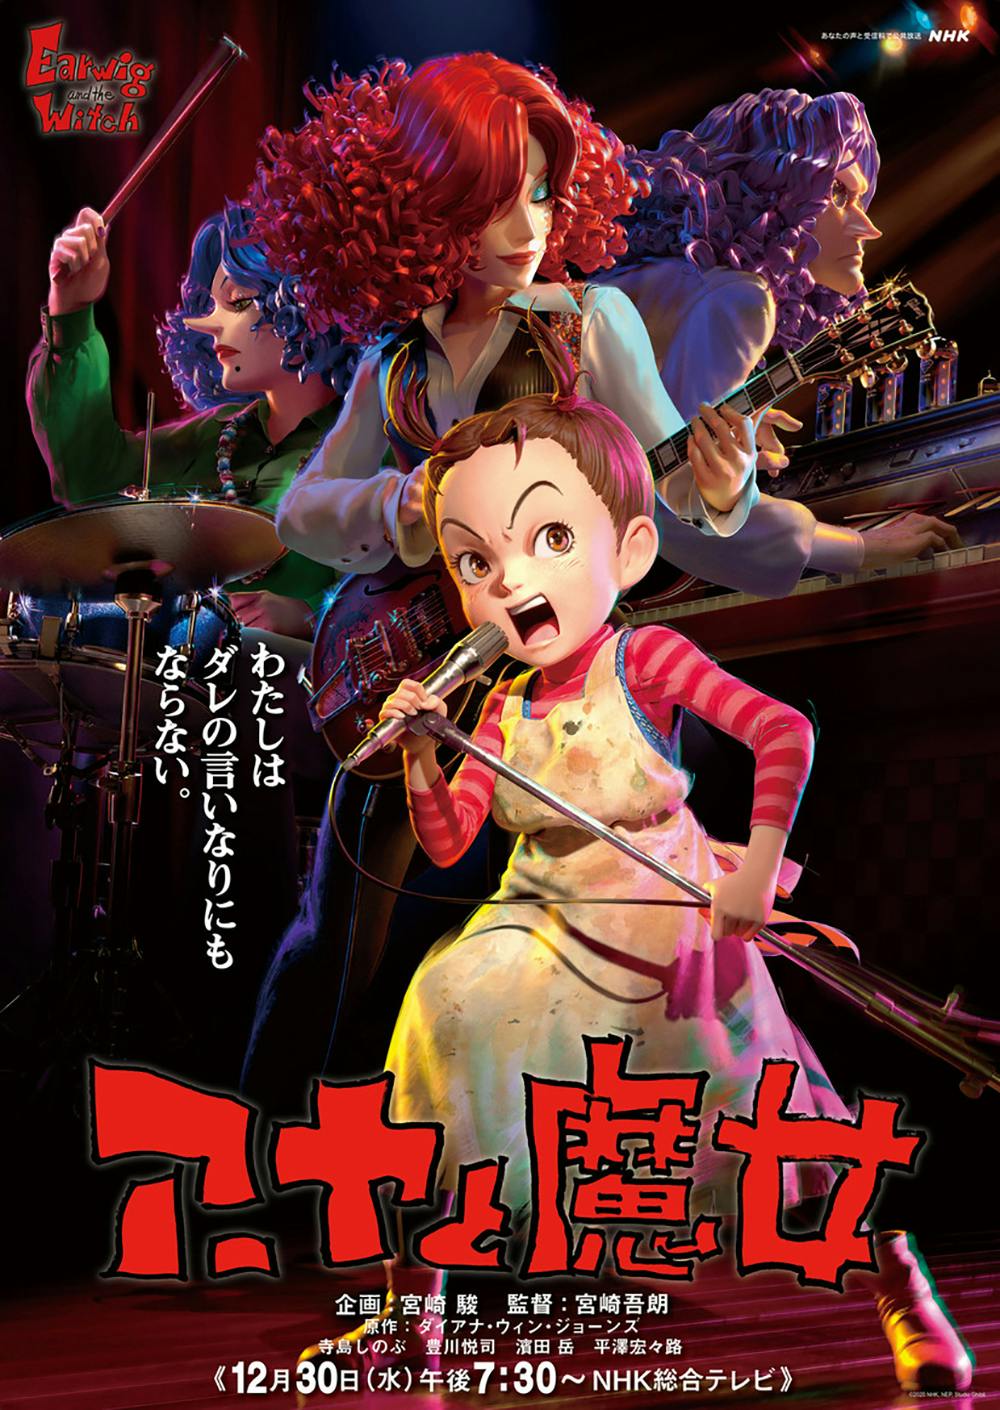 Aya et la sorcière Ghibli affiche film 3D